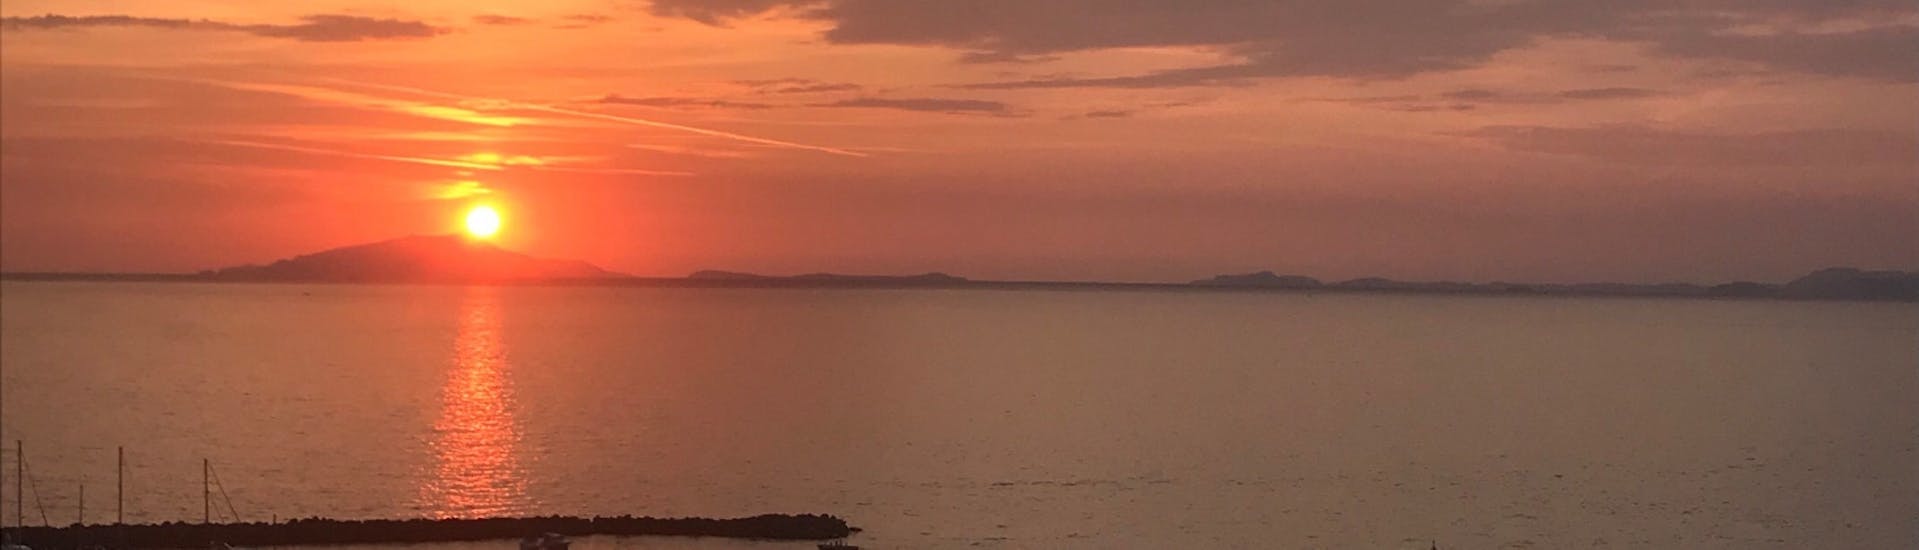 Una vista incredibile del tramonto sulla baia che si può ammirare durante la gita in barca privata intorno a Sorrento al Tramonto con Alba Sorrento.